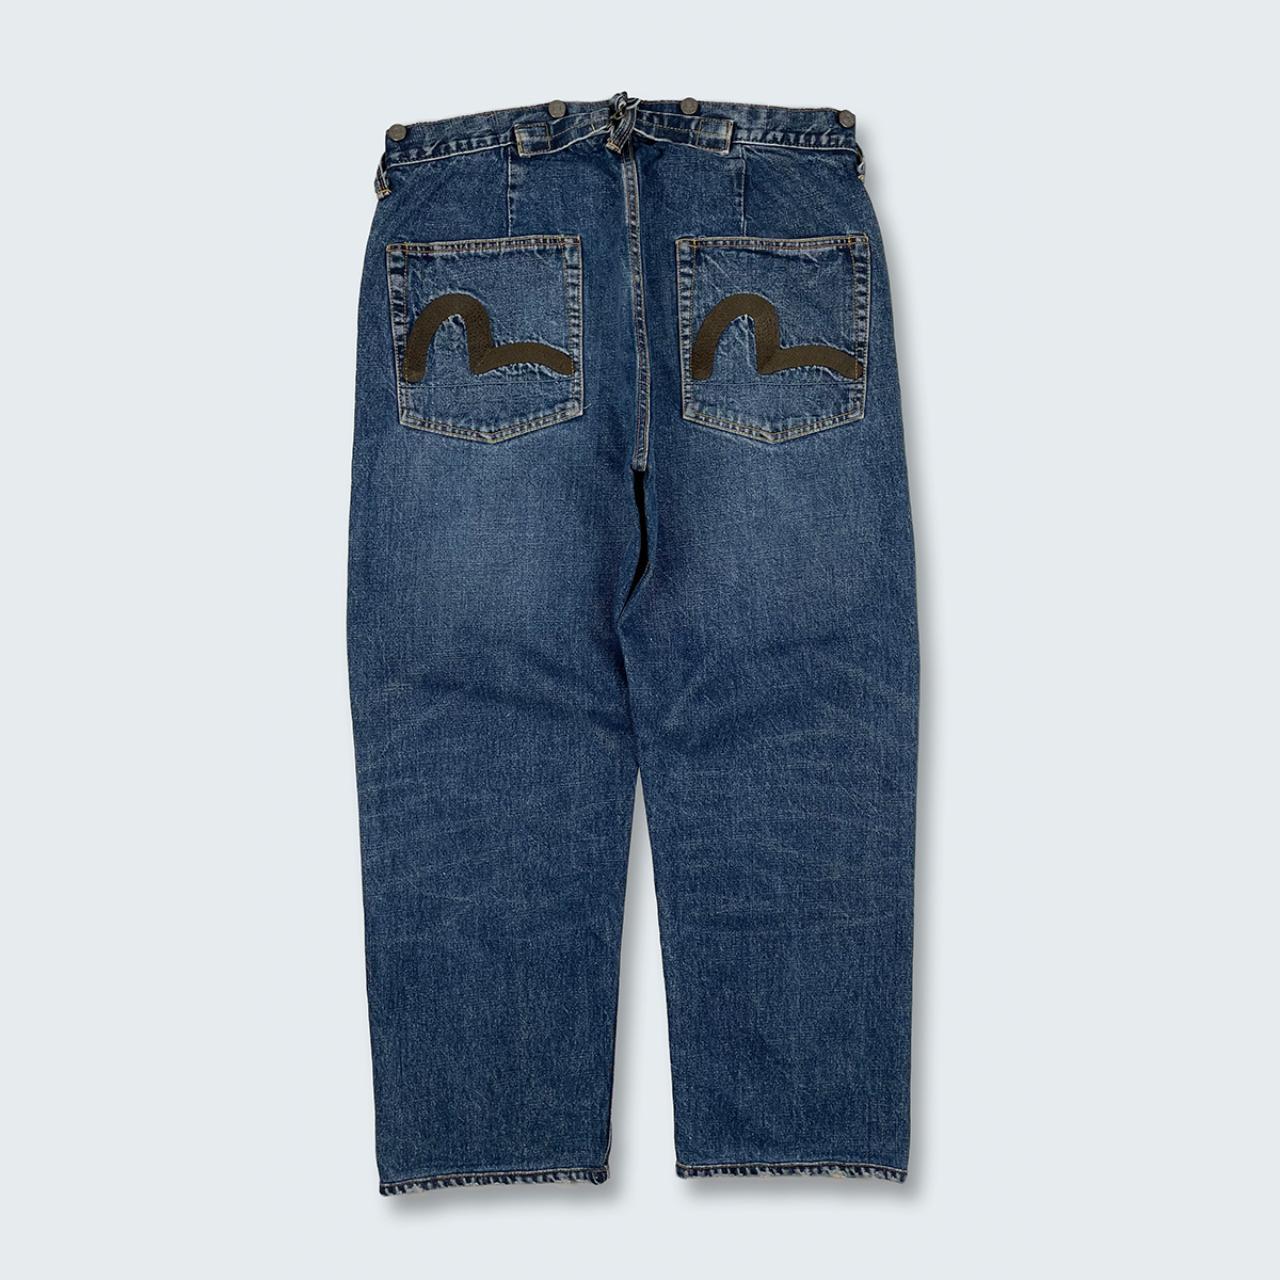 Authentic Vintage Evisu Jeans  (34")